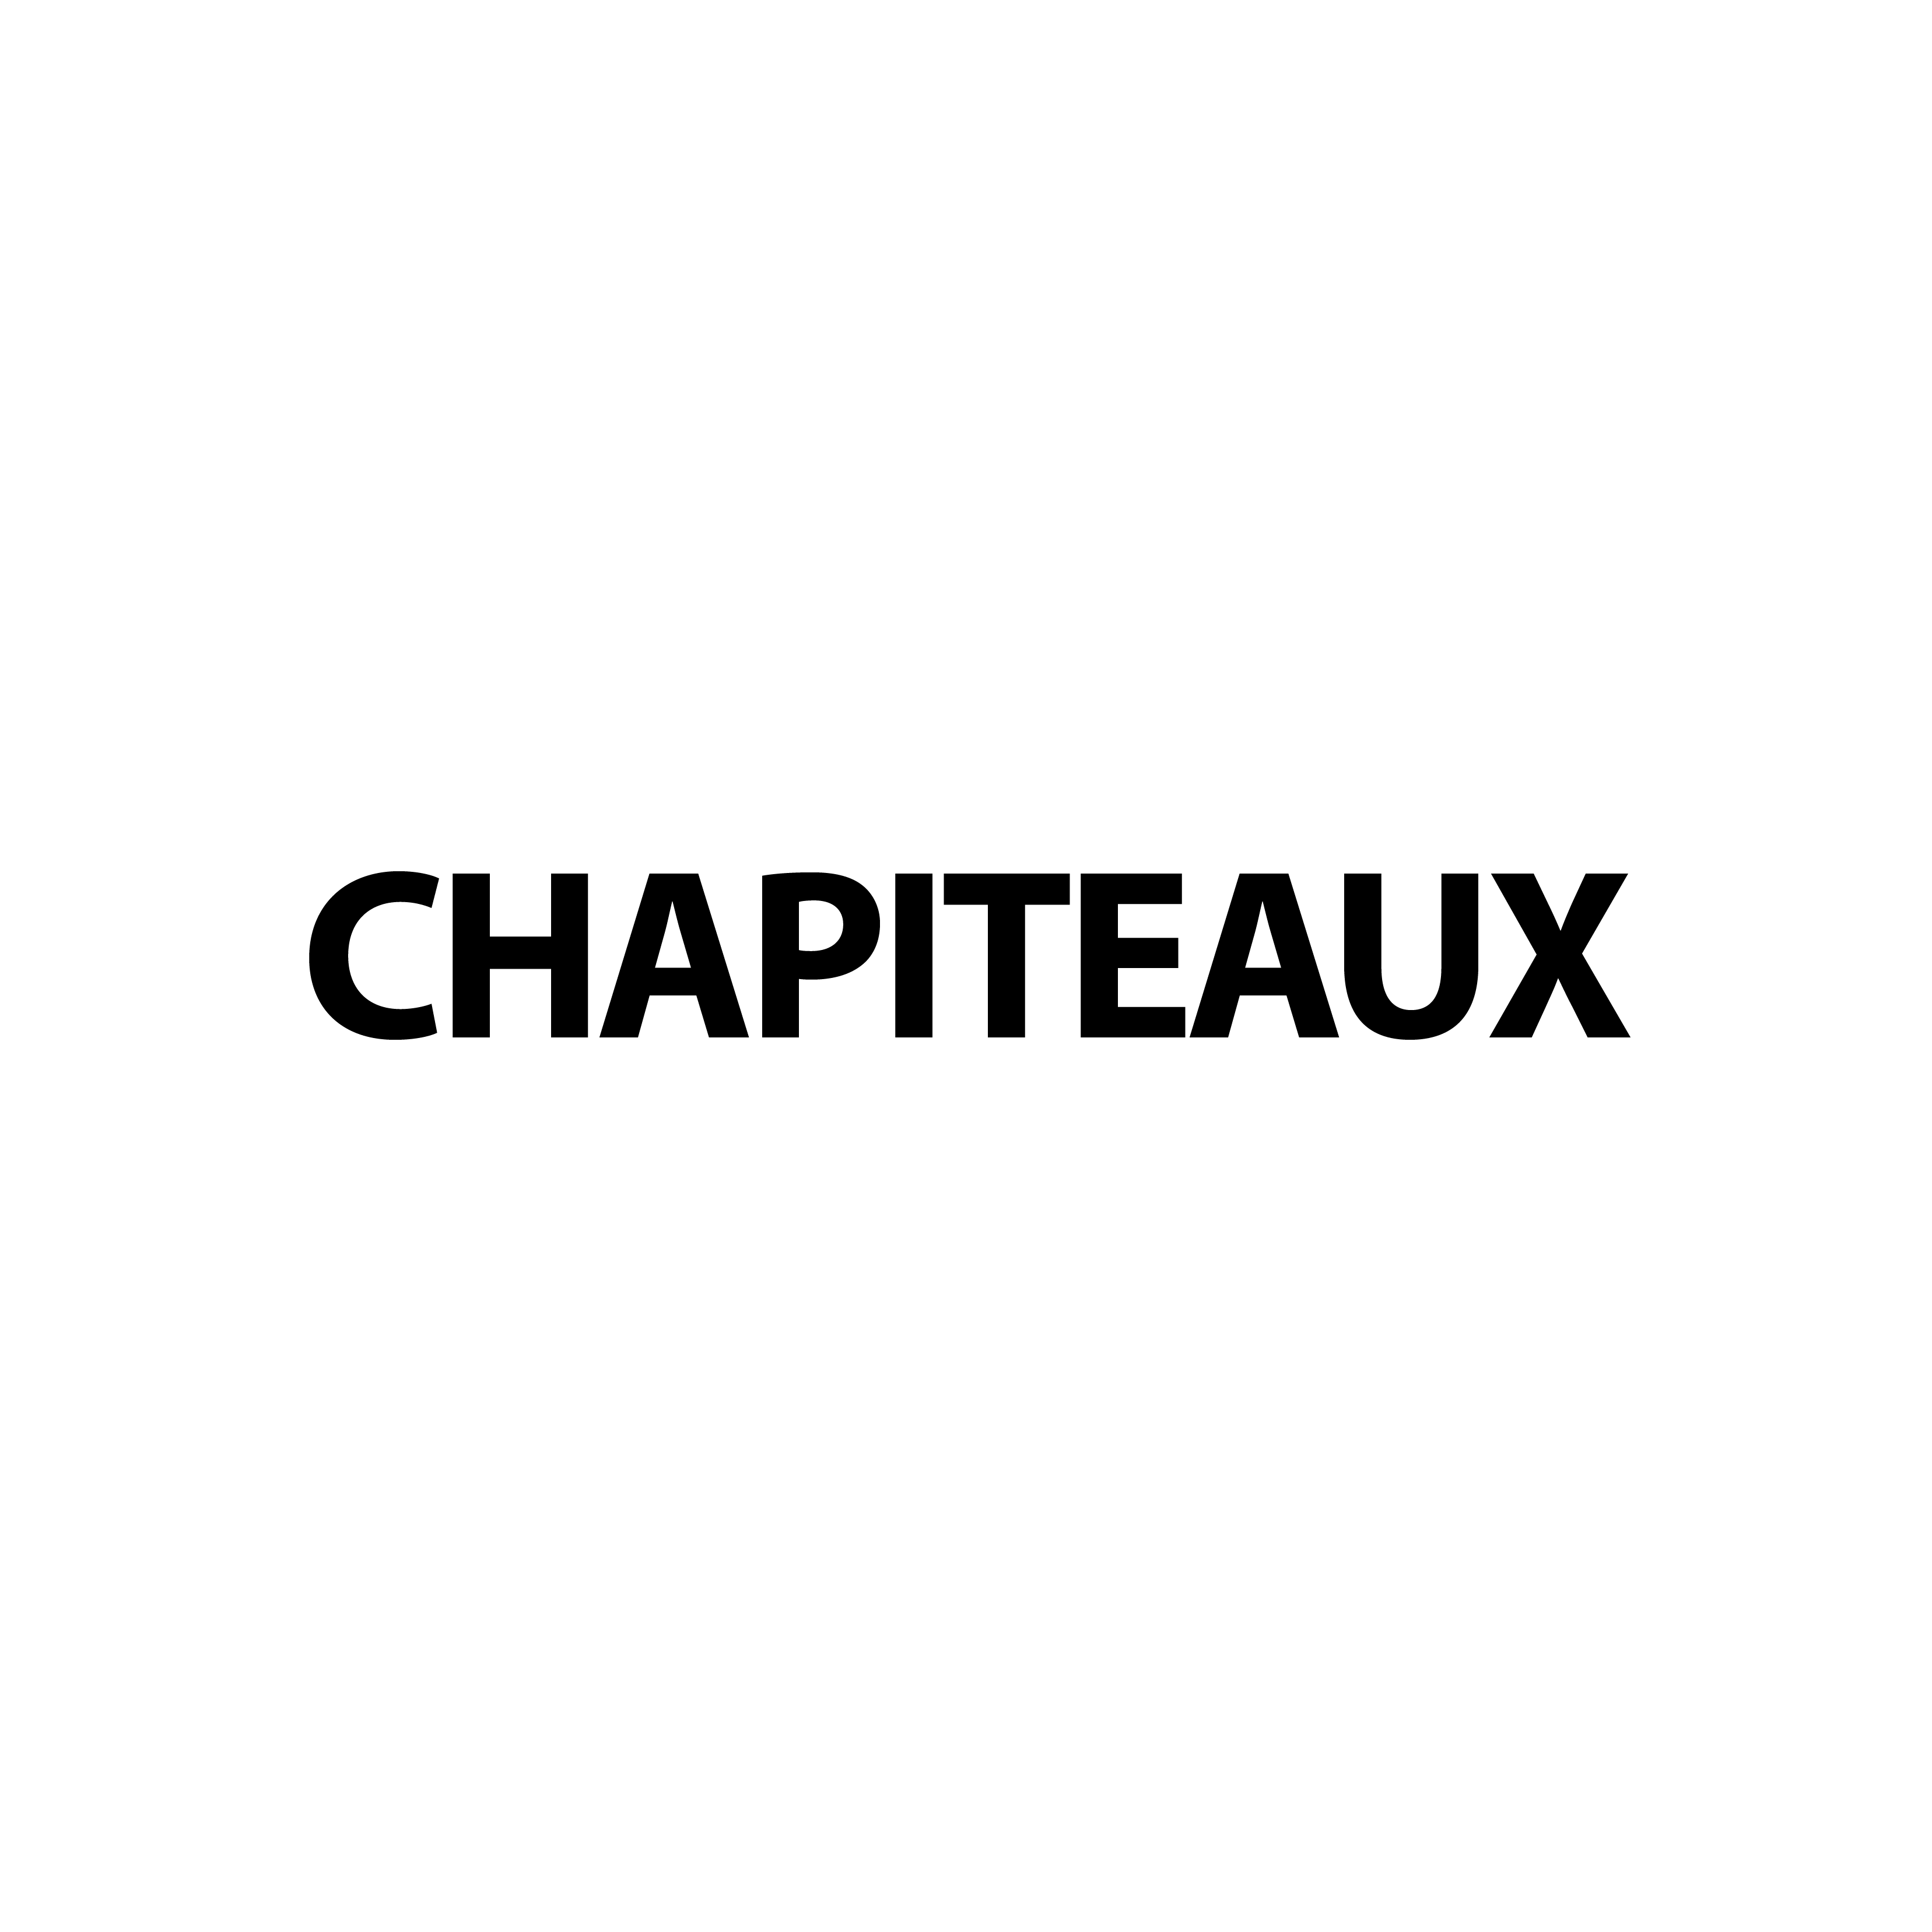 Chapiteaux